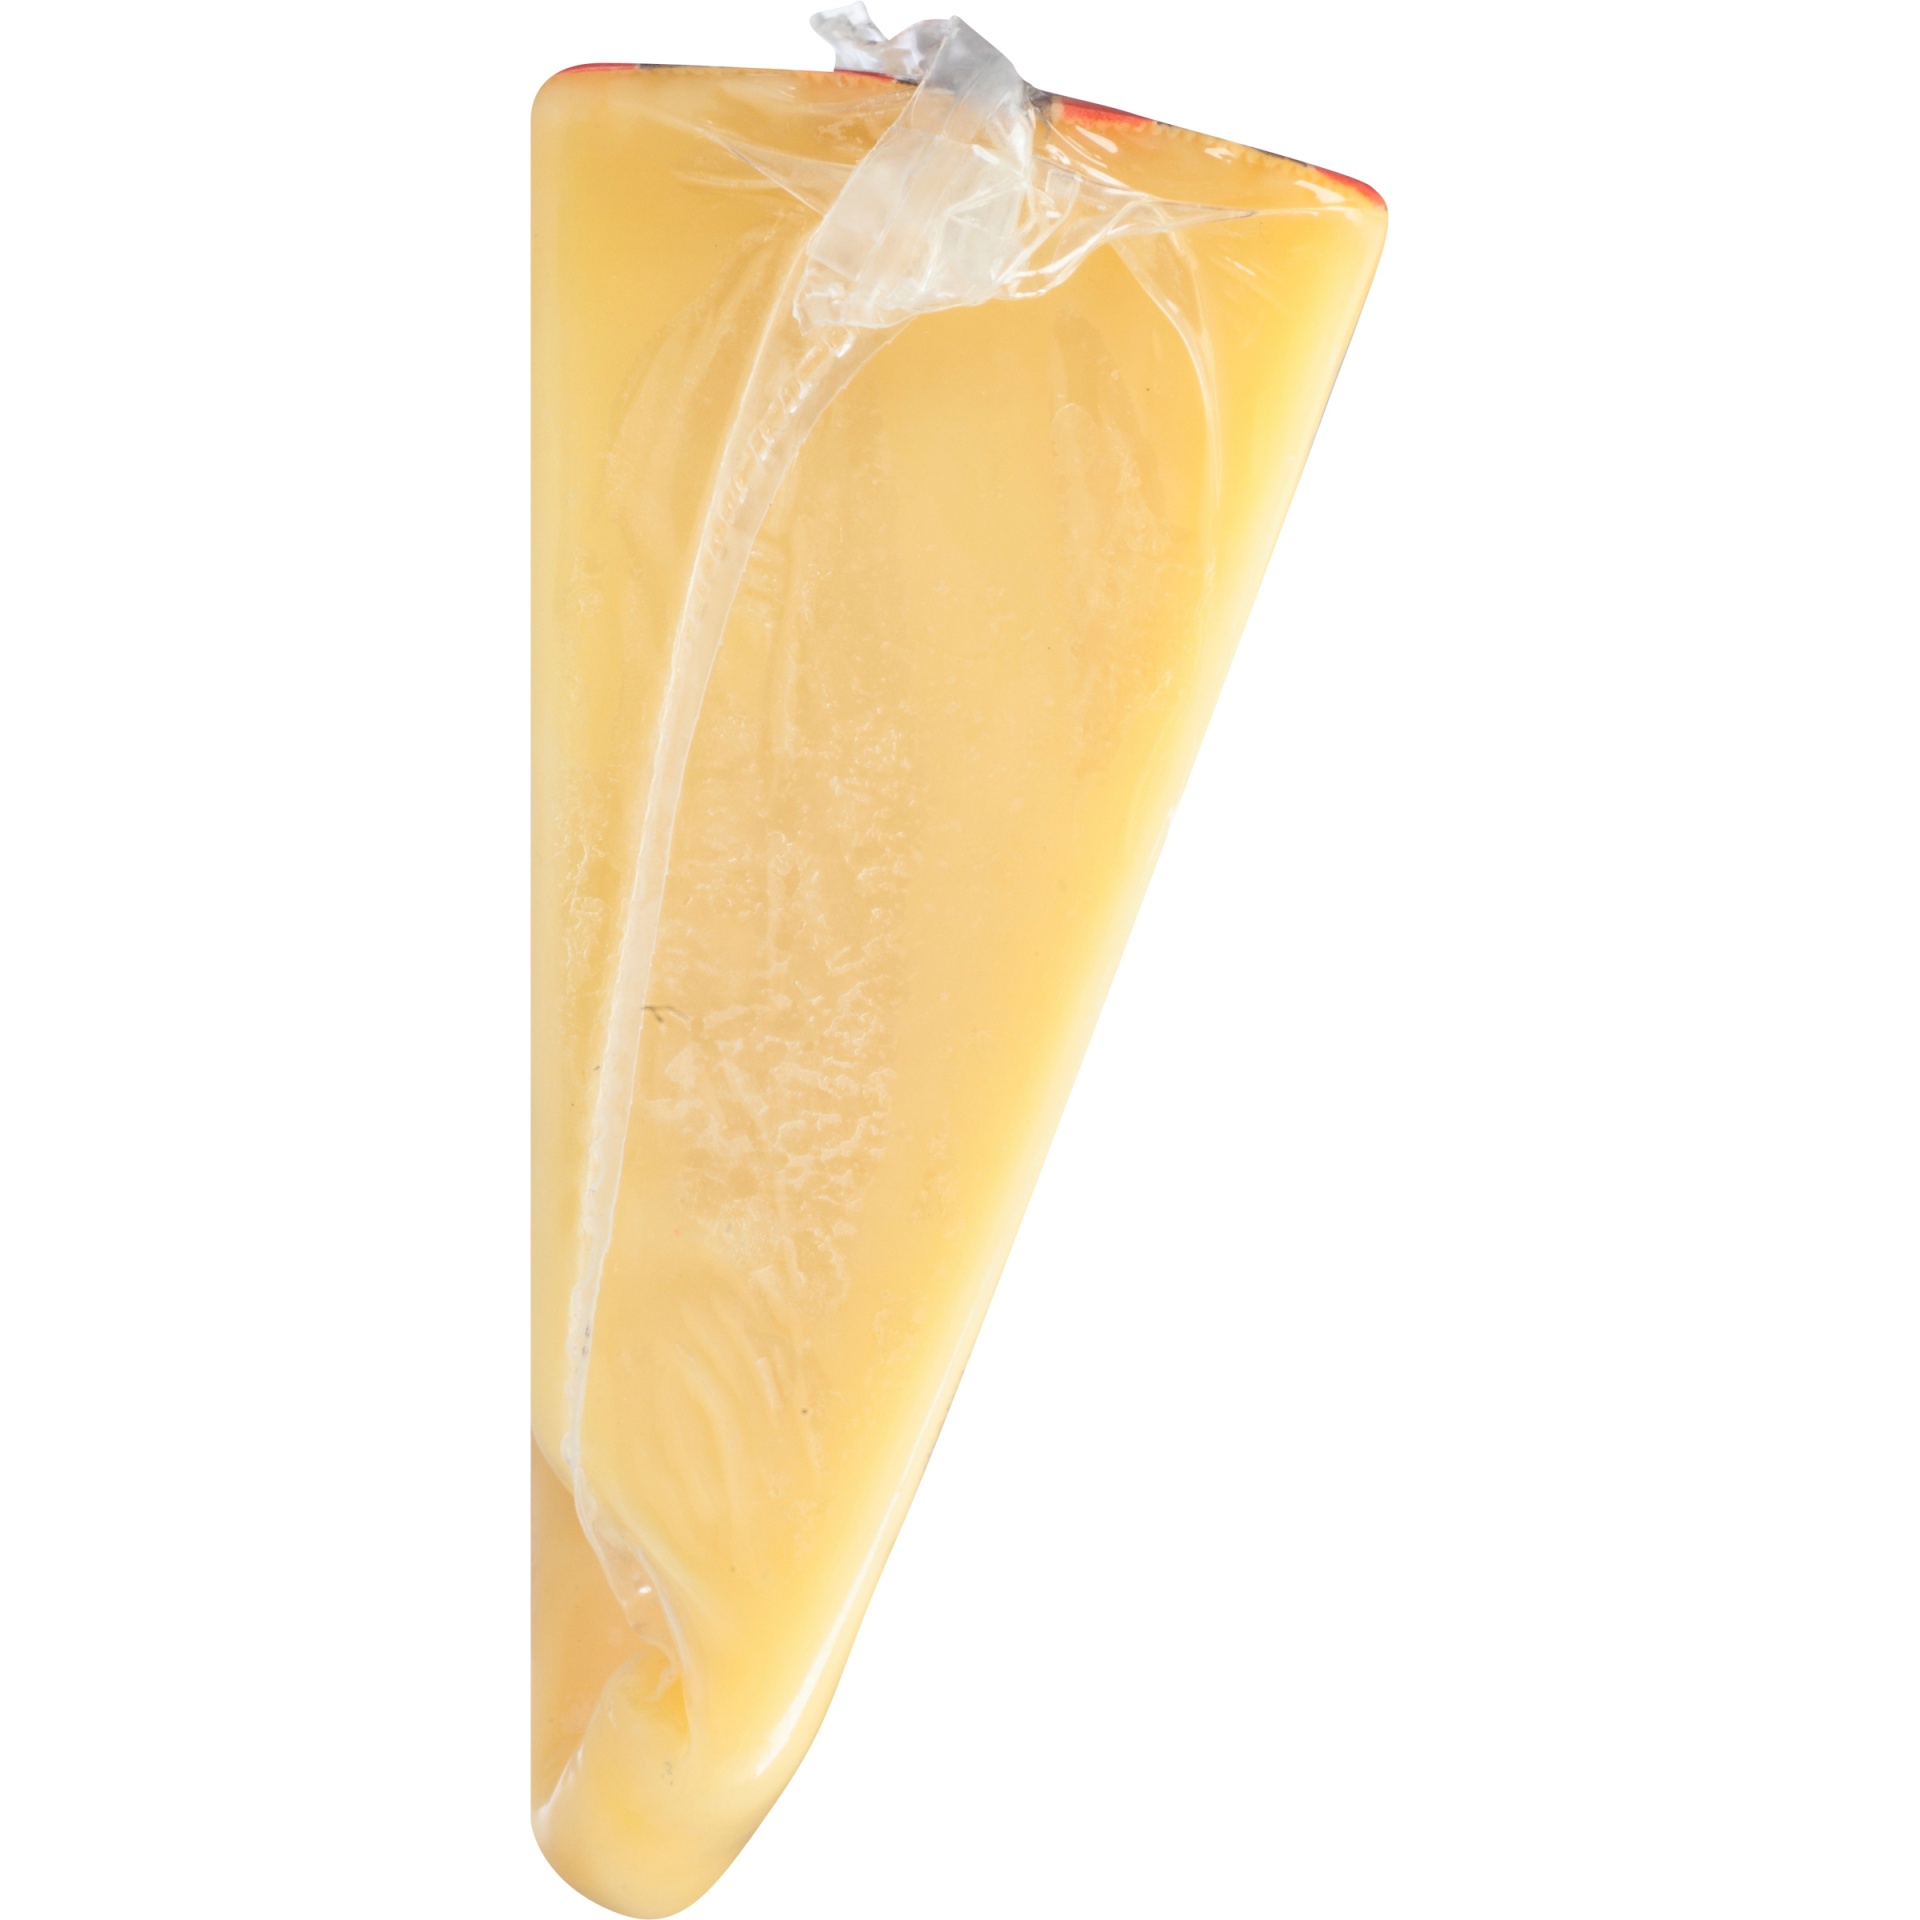 skim cheese